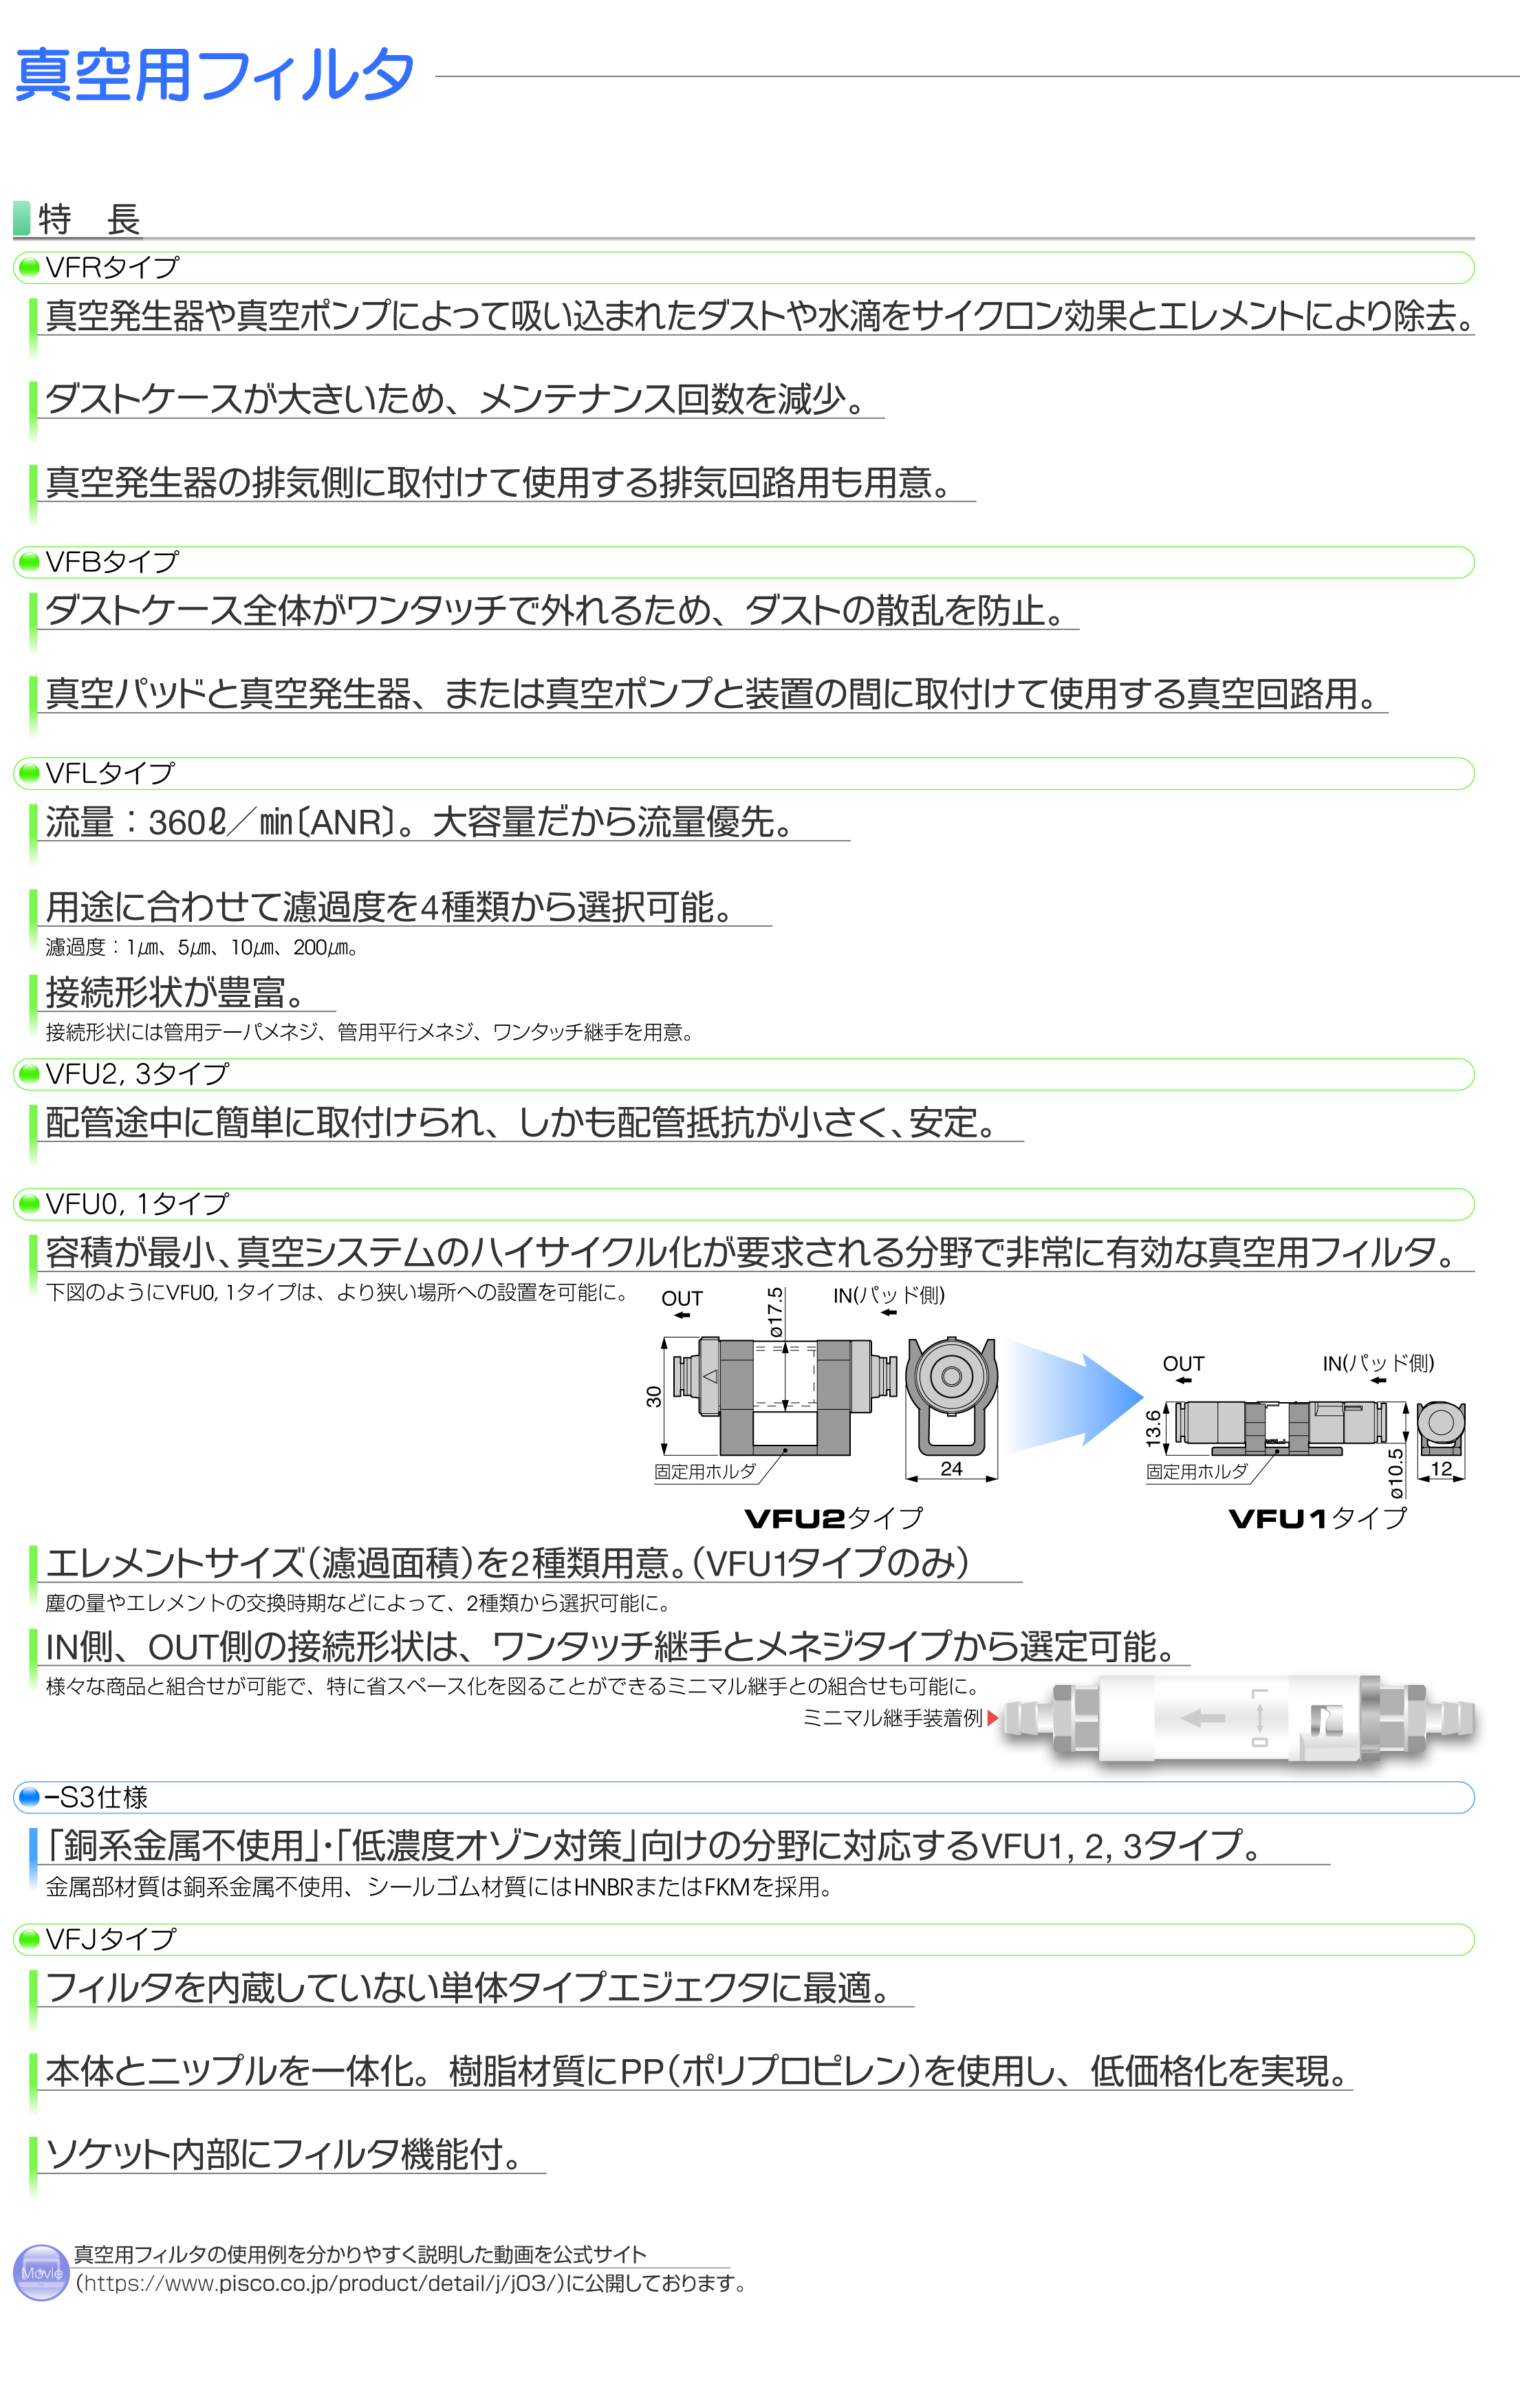 よいしな / 真空用ﾌｨﾙﾀ大容量ﾕﾆｵﾝﾀｲﾌﾟ ㈱日本ピスコ PISCO